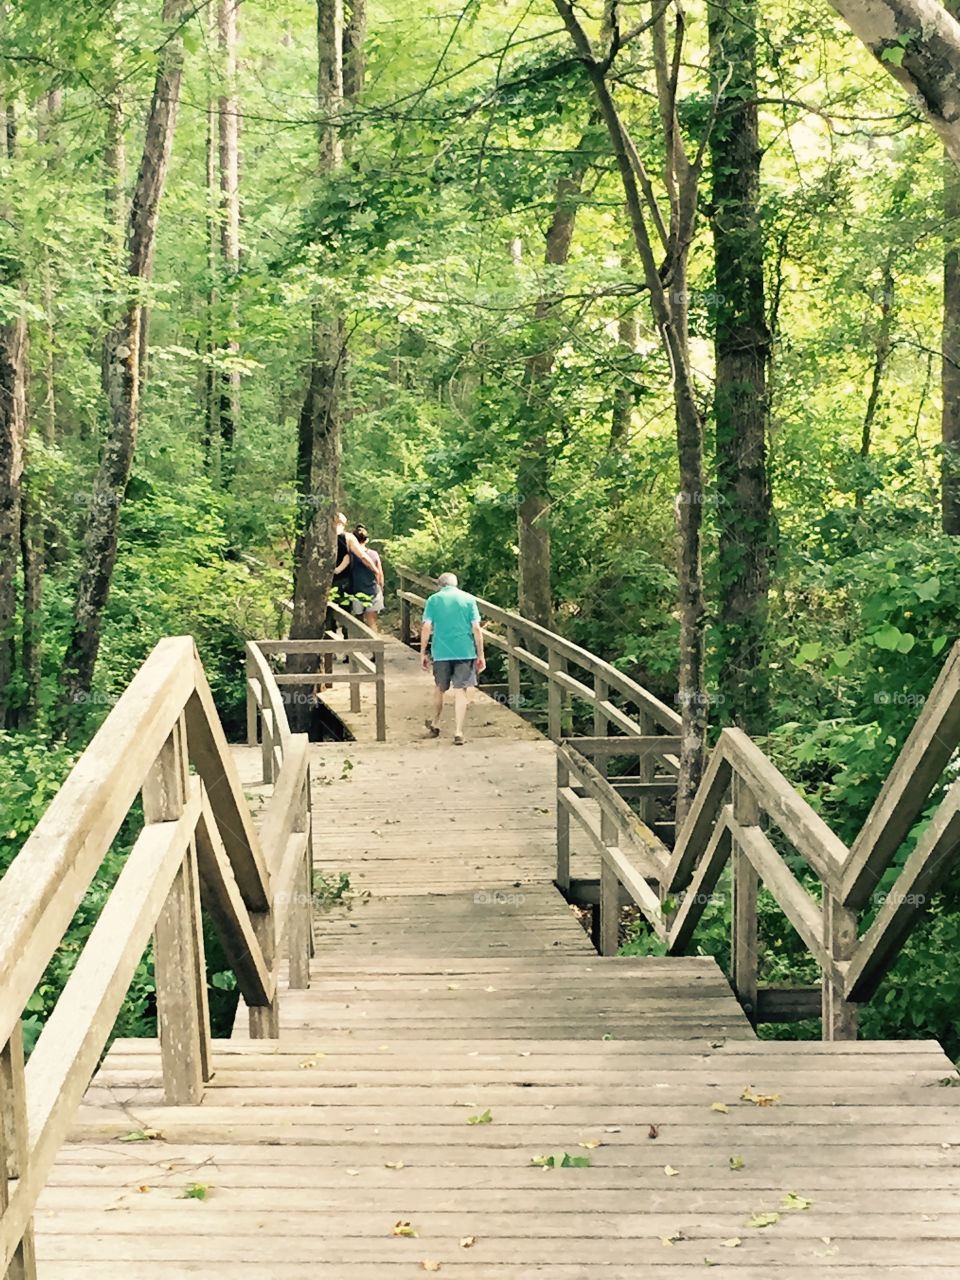 A wooden walk bridge through the Georgia woods.